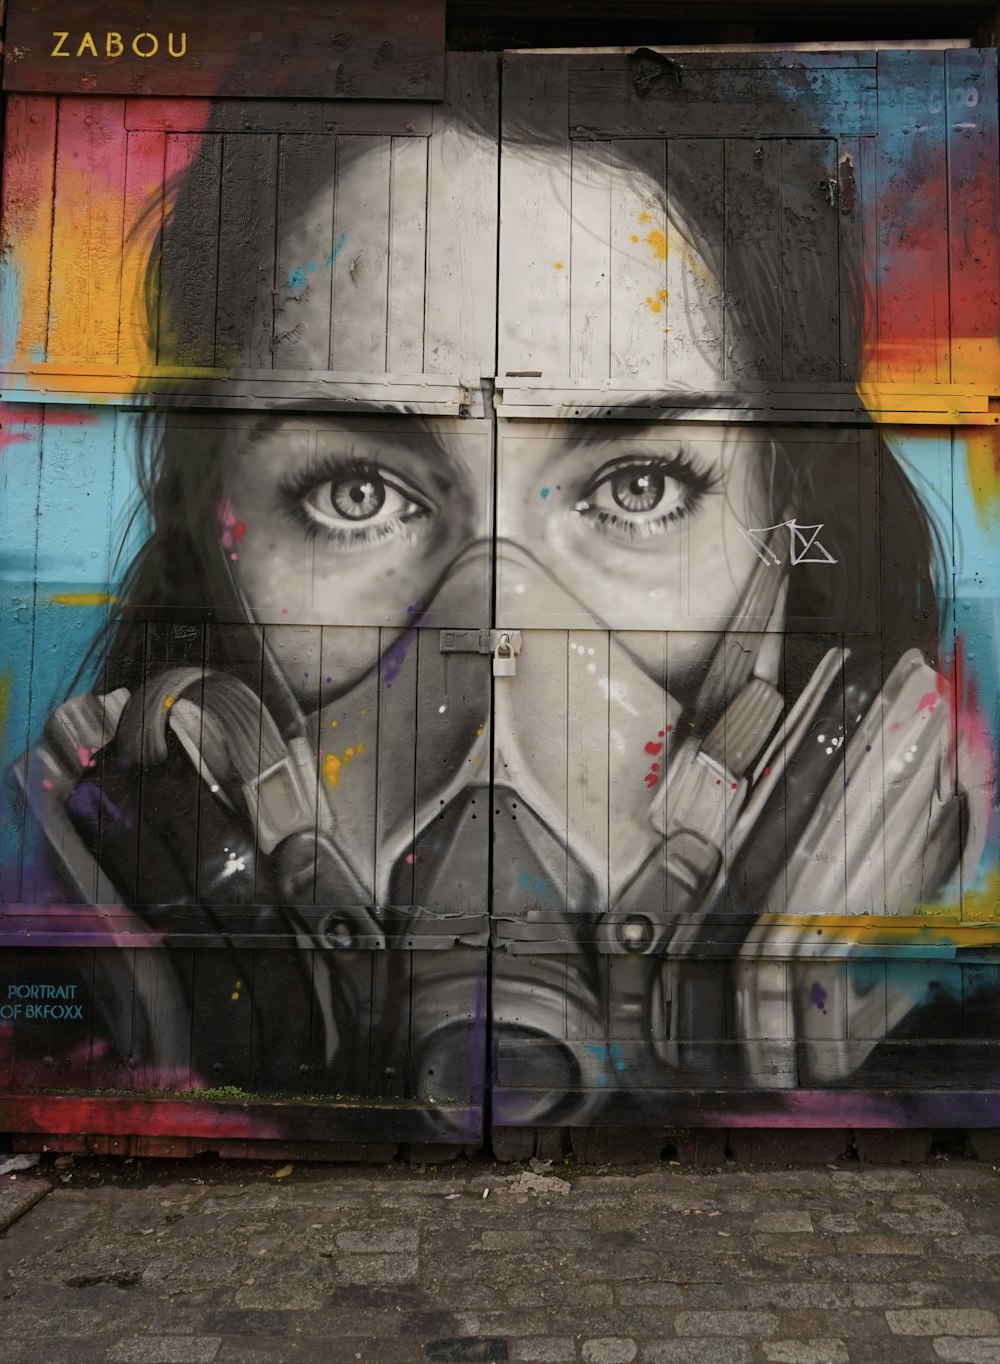 woman wearing oxygen mask graffiti on plank wall